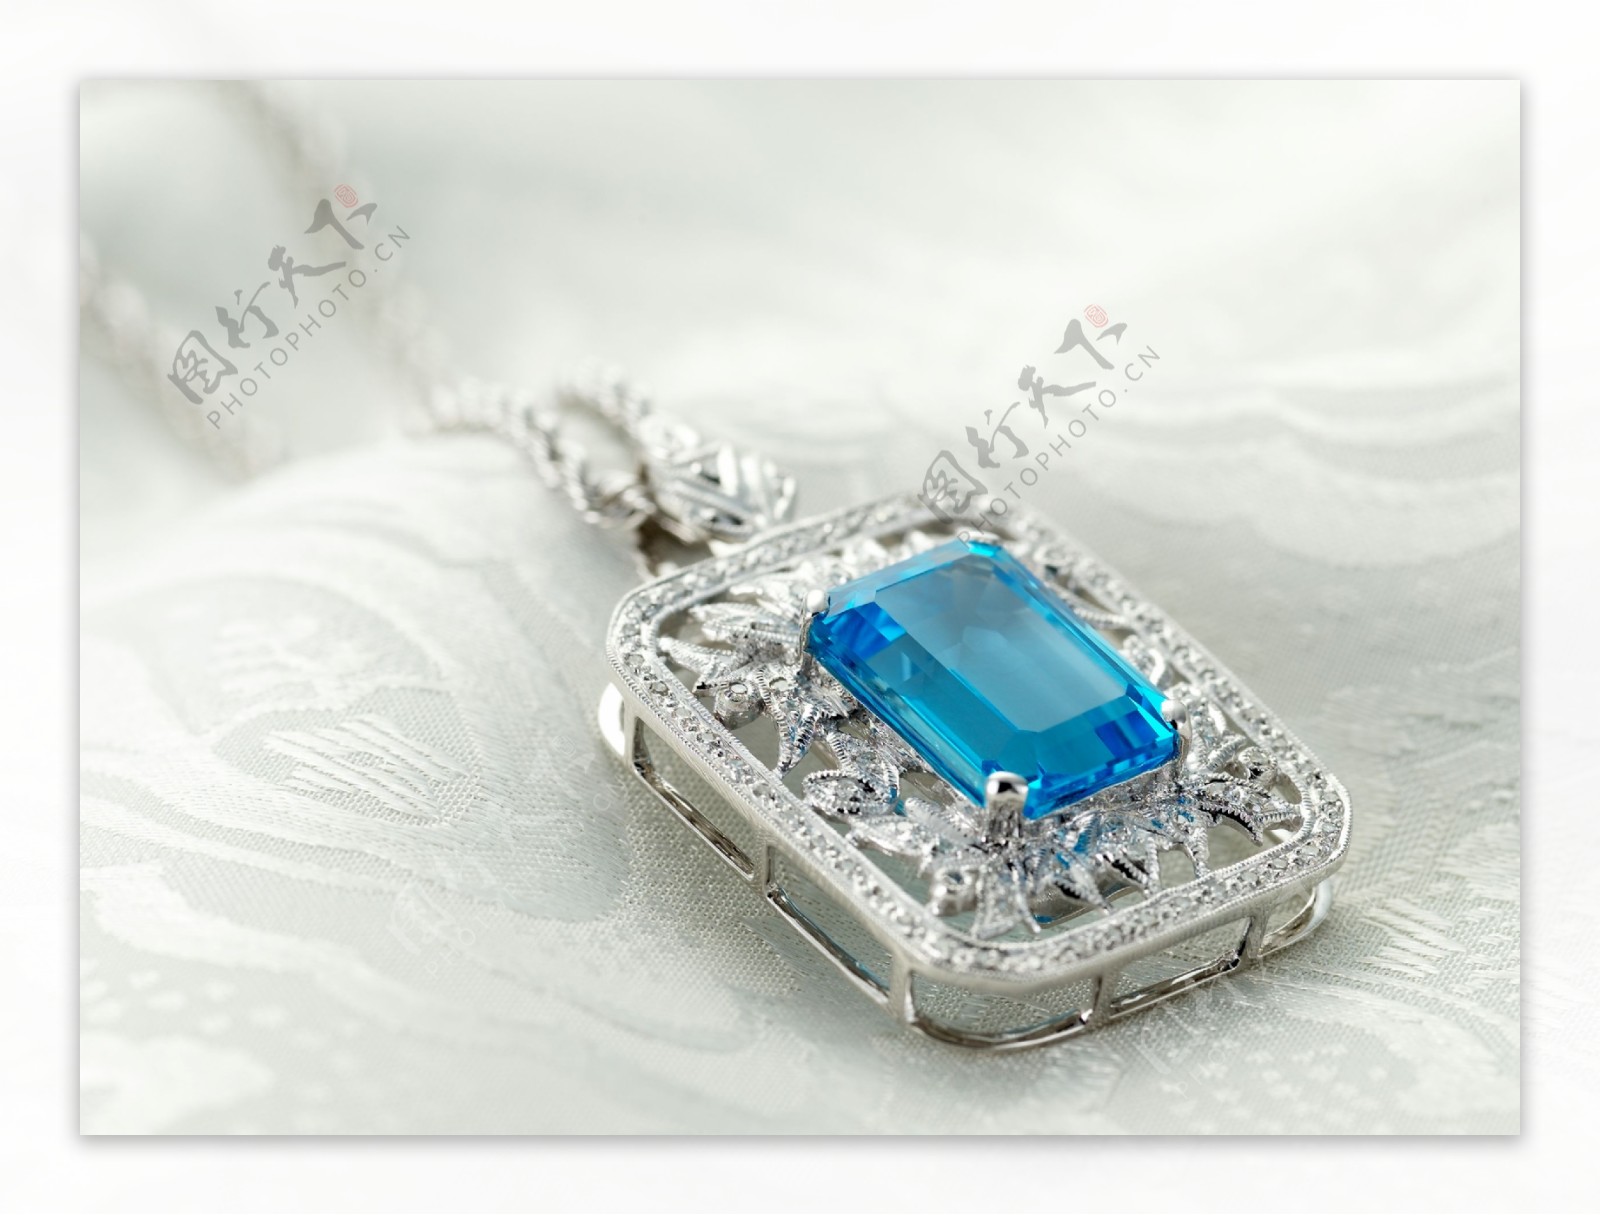 镶嵌蓝宝石的钻石项链图片